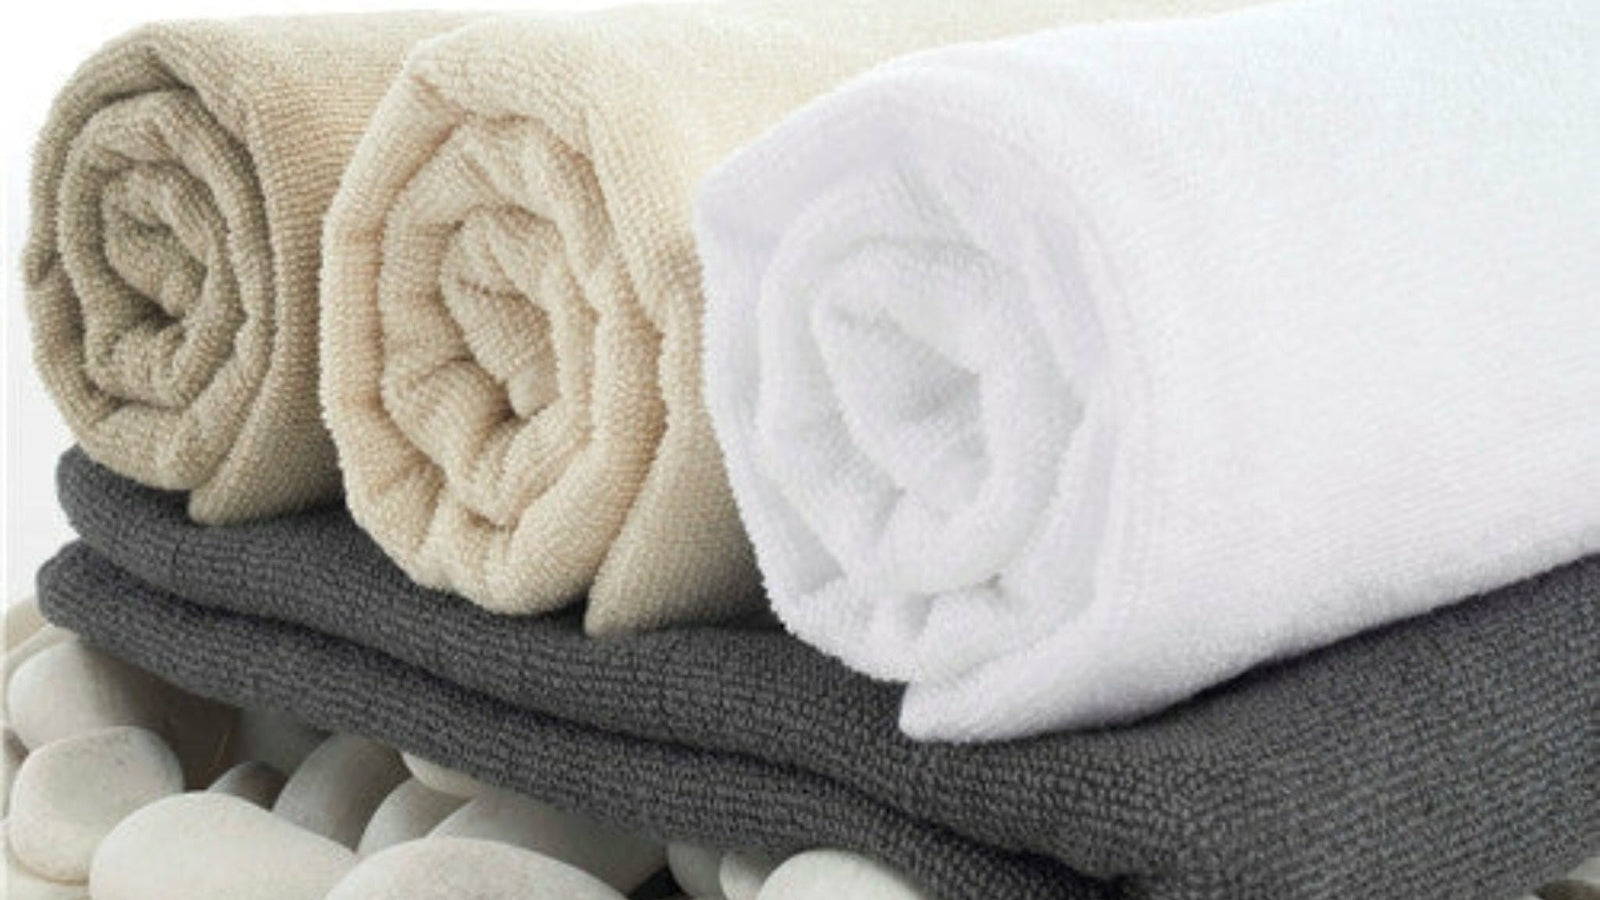 https://flandb.com/cdn/shop/articles/towels-for-men_1600x.jpg?v=1680652483